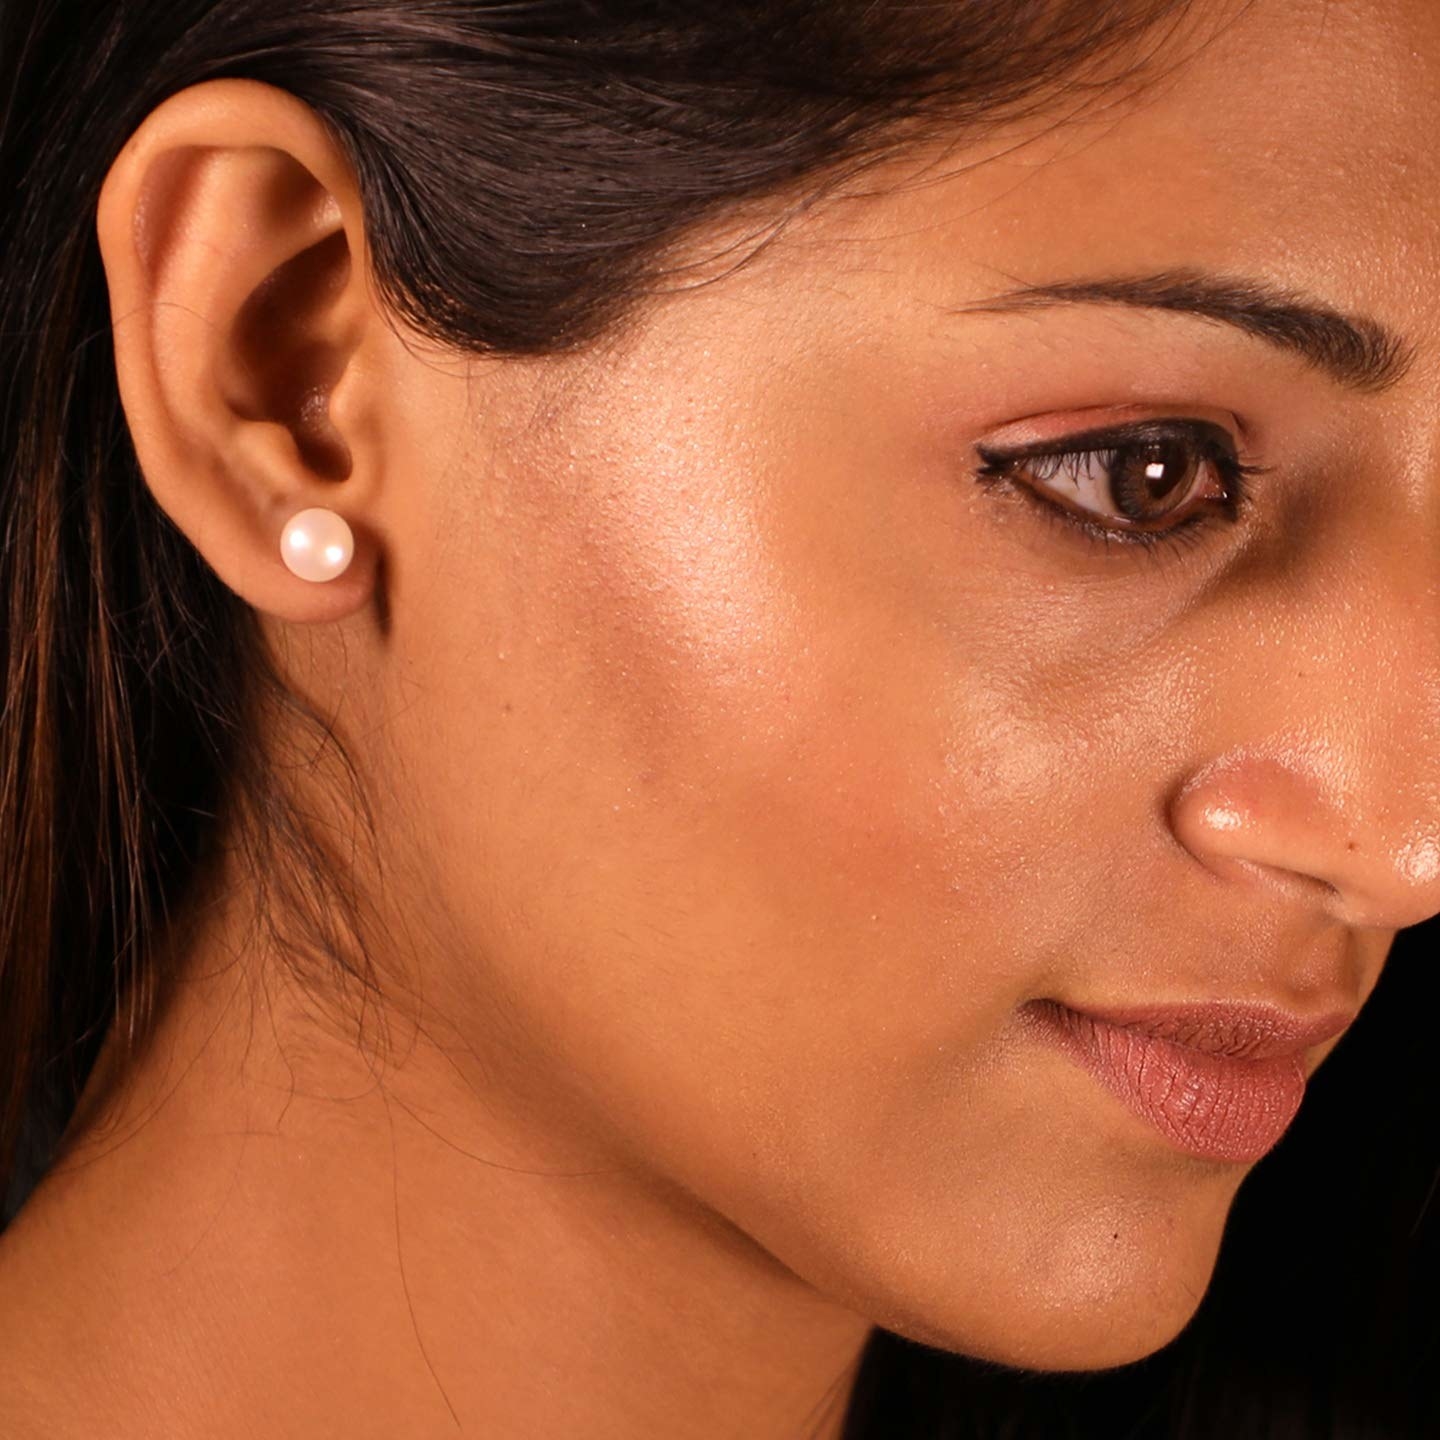 A woman wearing a pearl earring.